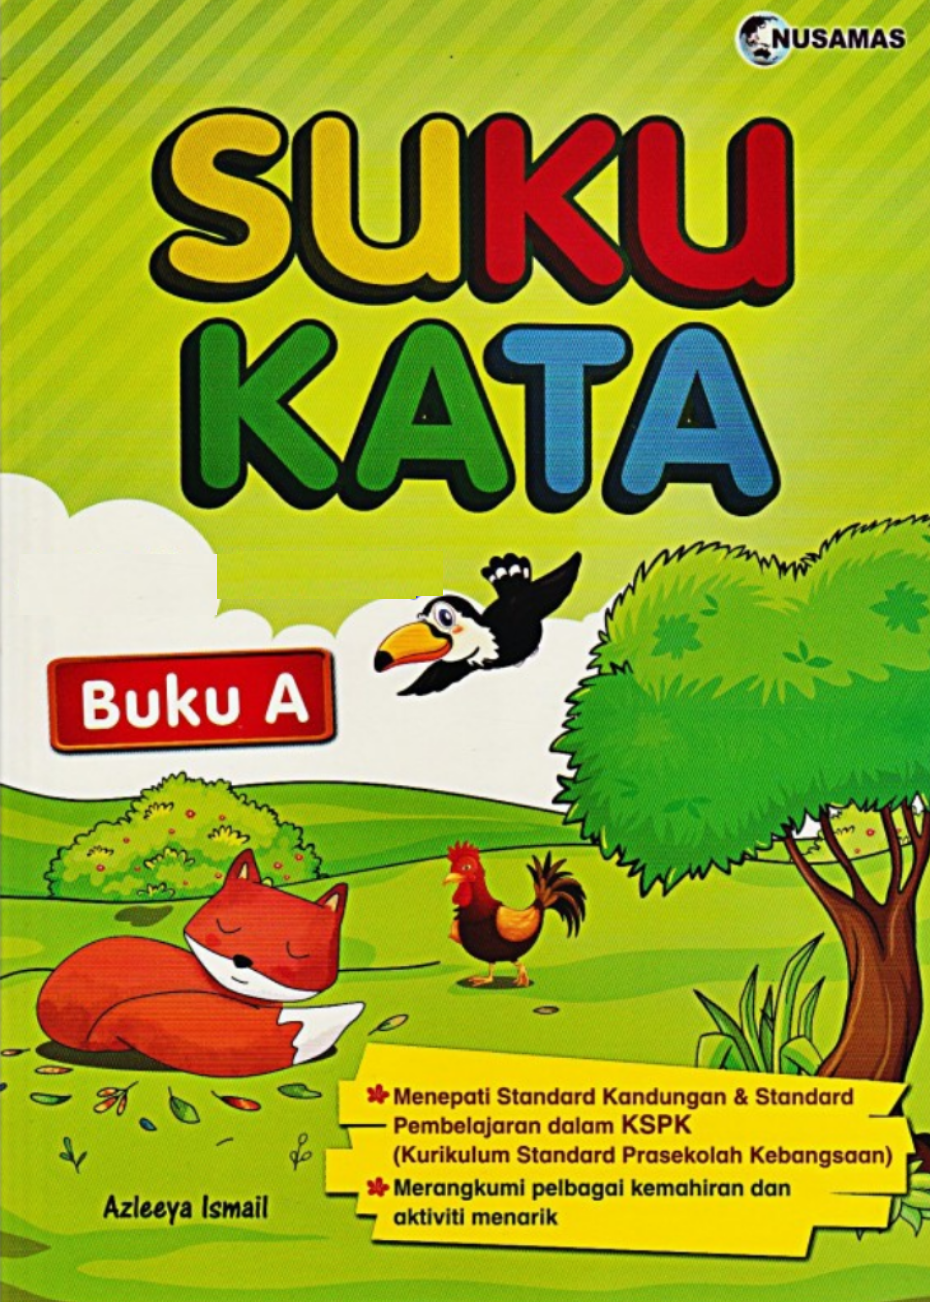 Suku Kata Buku 1 No 1 Online Bookstore Revision Book Supplier Malaysia